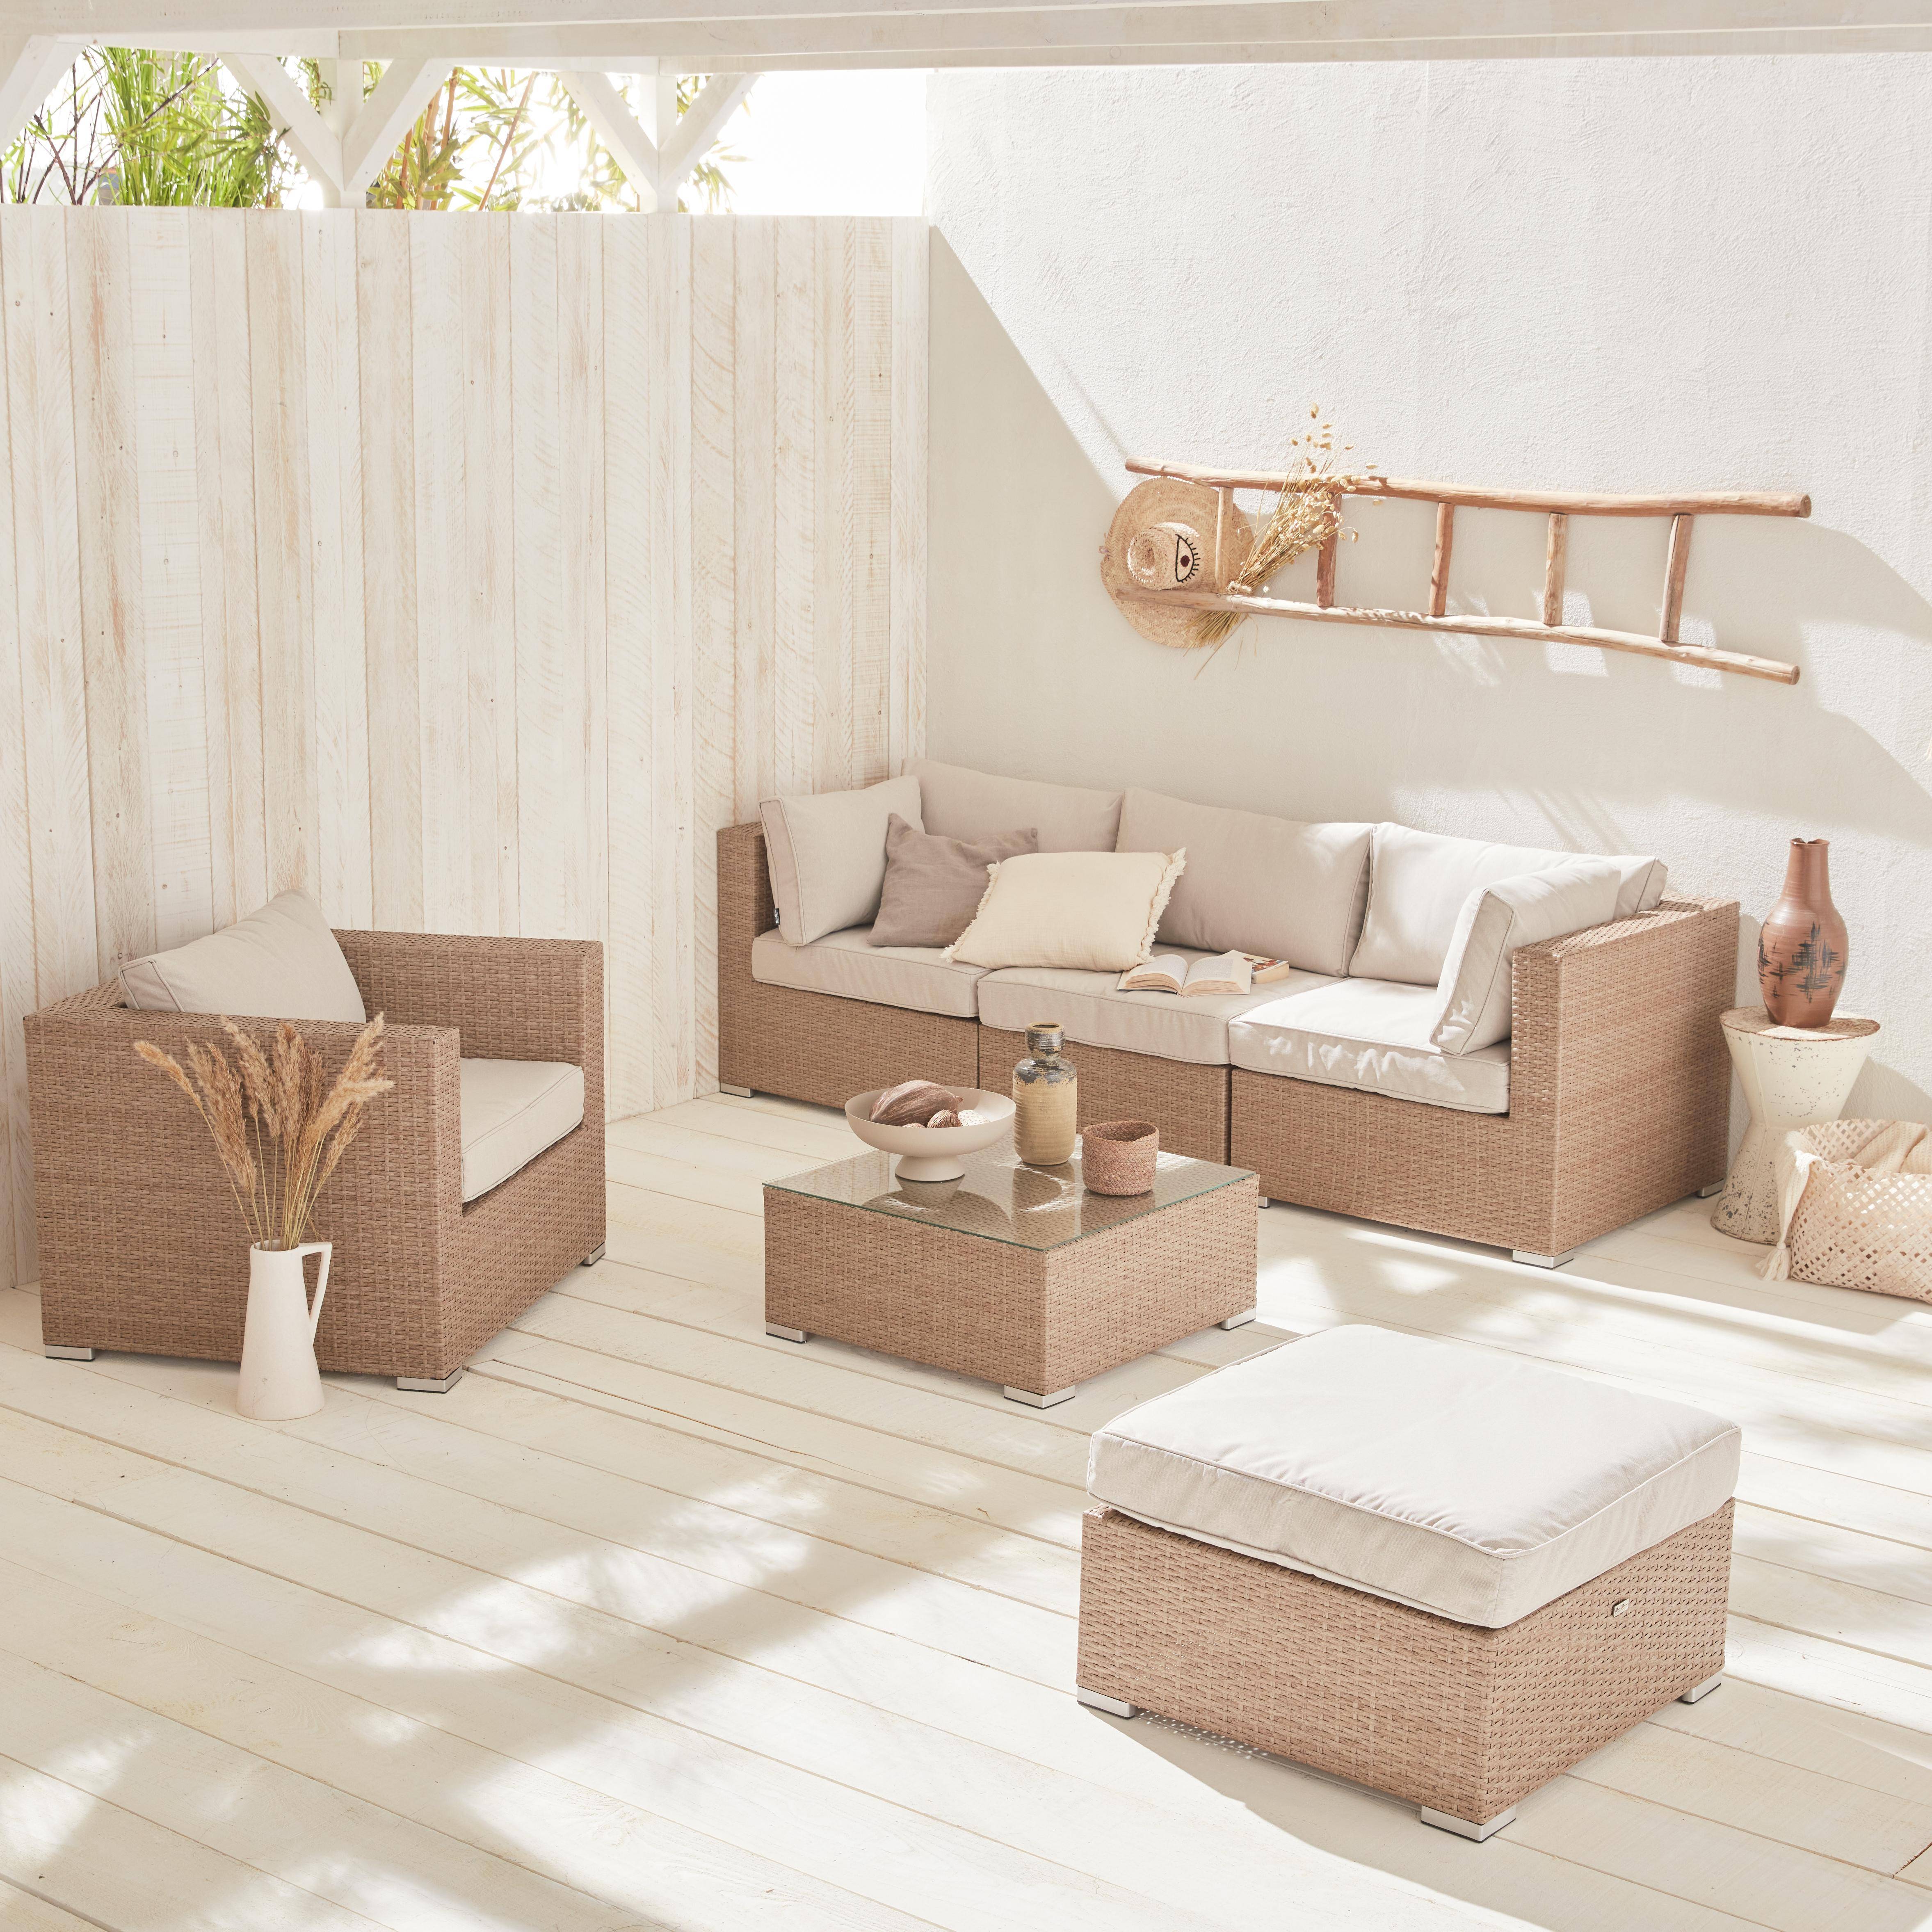 Muebles de jardín de resina tejida - Caligari - Beige, cojines beige - 5 plazas - 1 sillón, 1 sillón sin reposabrazos, 1 puf, 2 sillones de esquina, una mesa de centro Photo1